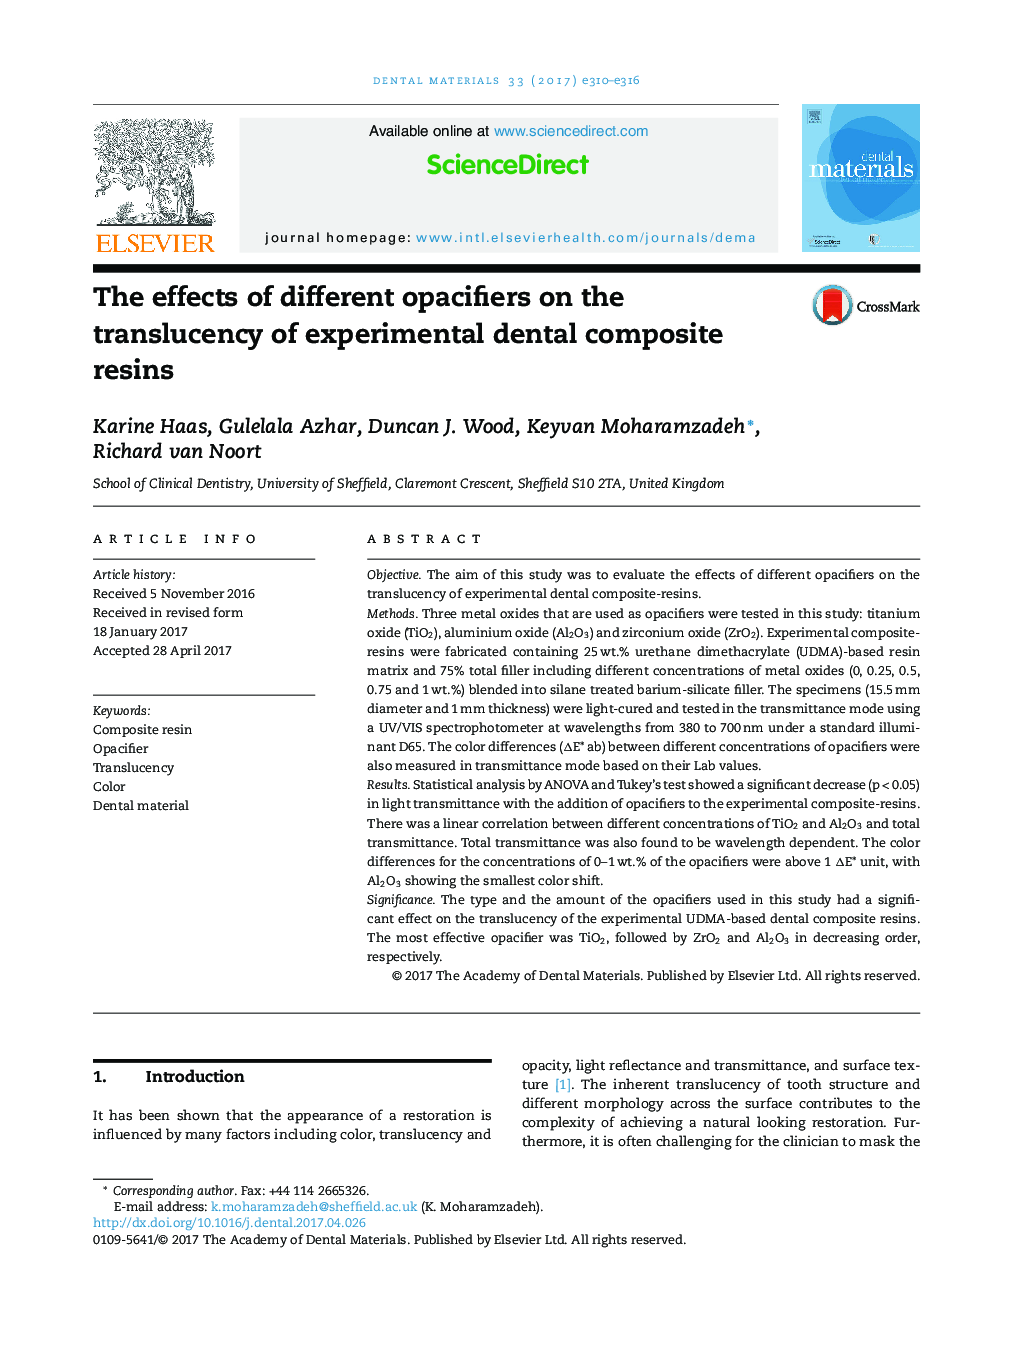 اثرات شفاف کننده های مختلف بر روی شفافیت رزین های کامپوزیتی تجربی دندانپزشکی 